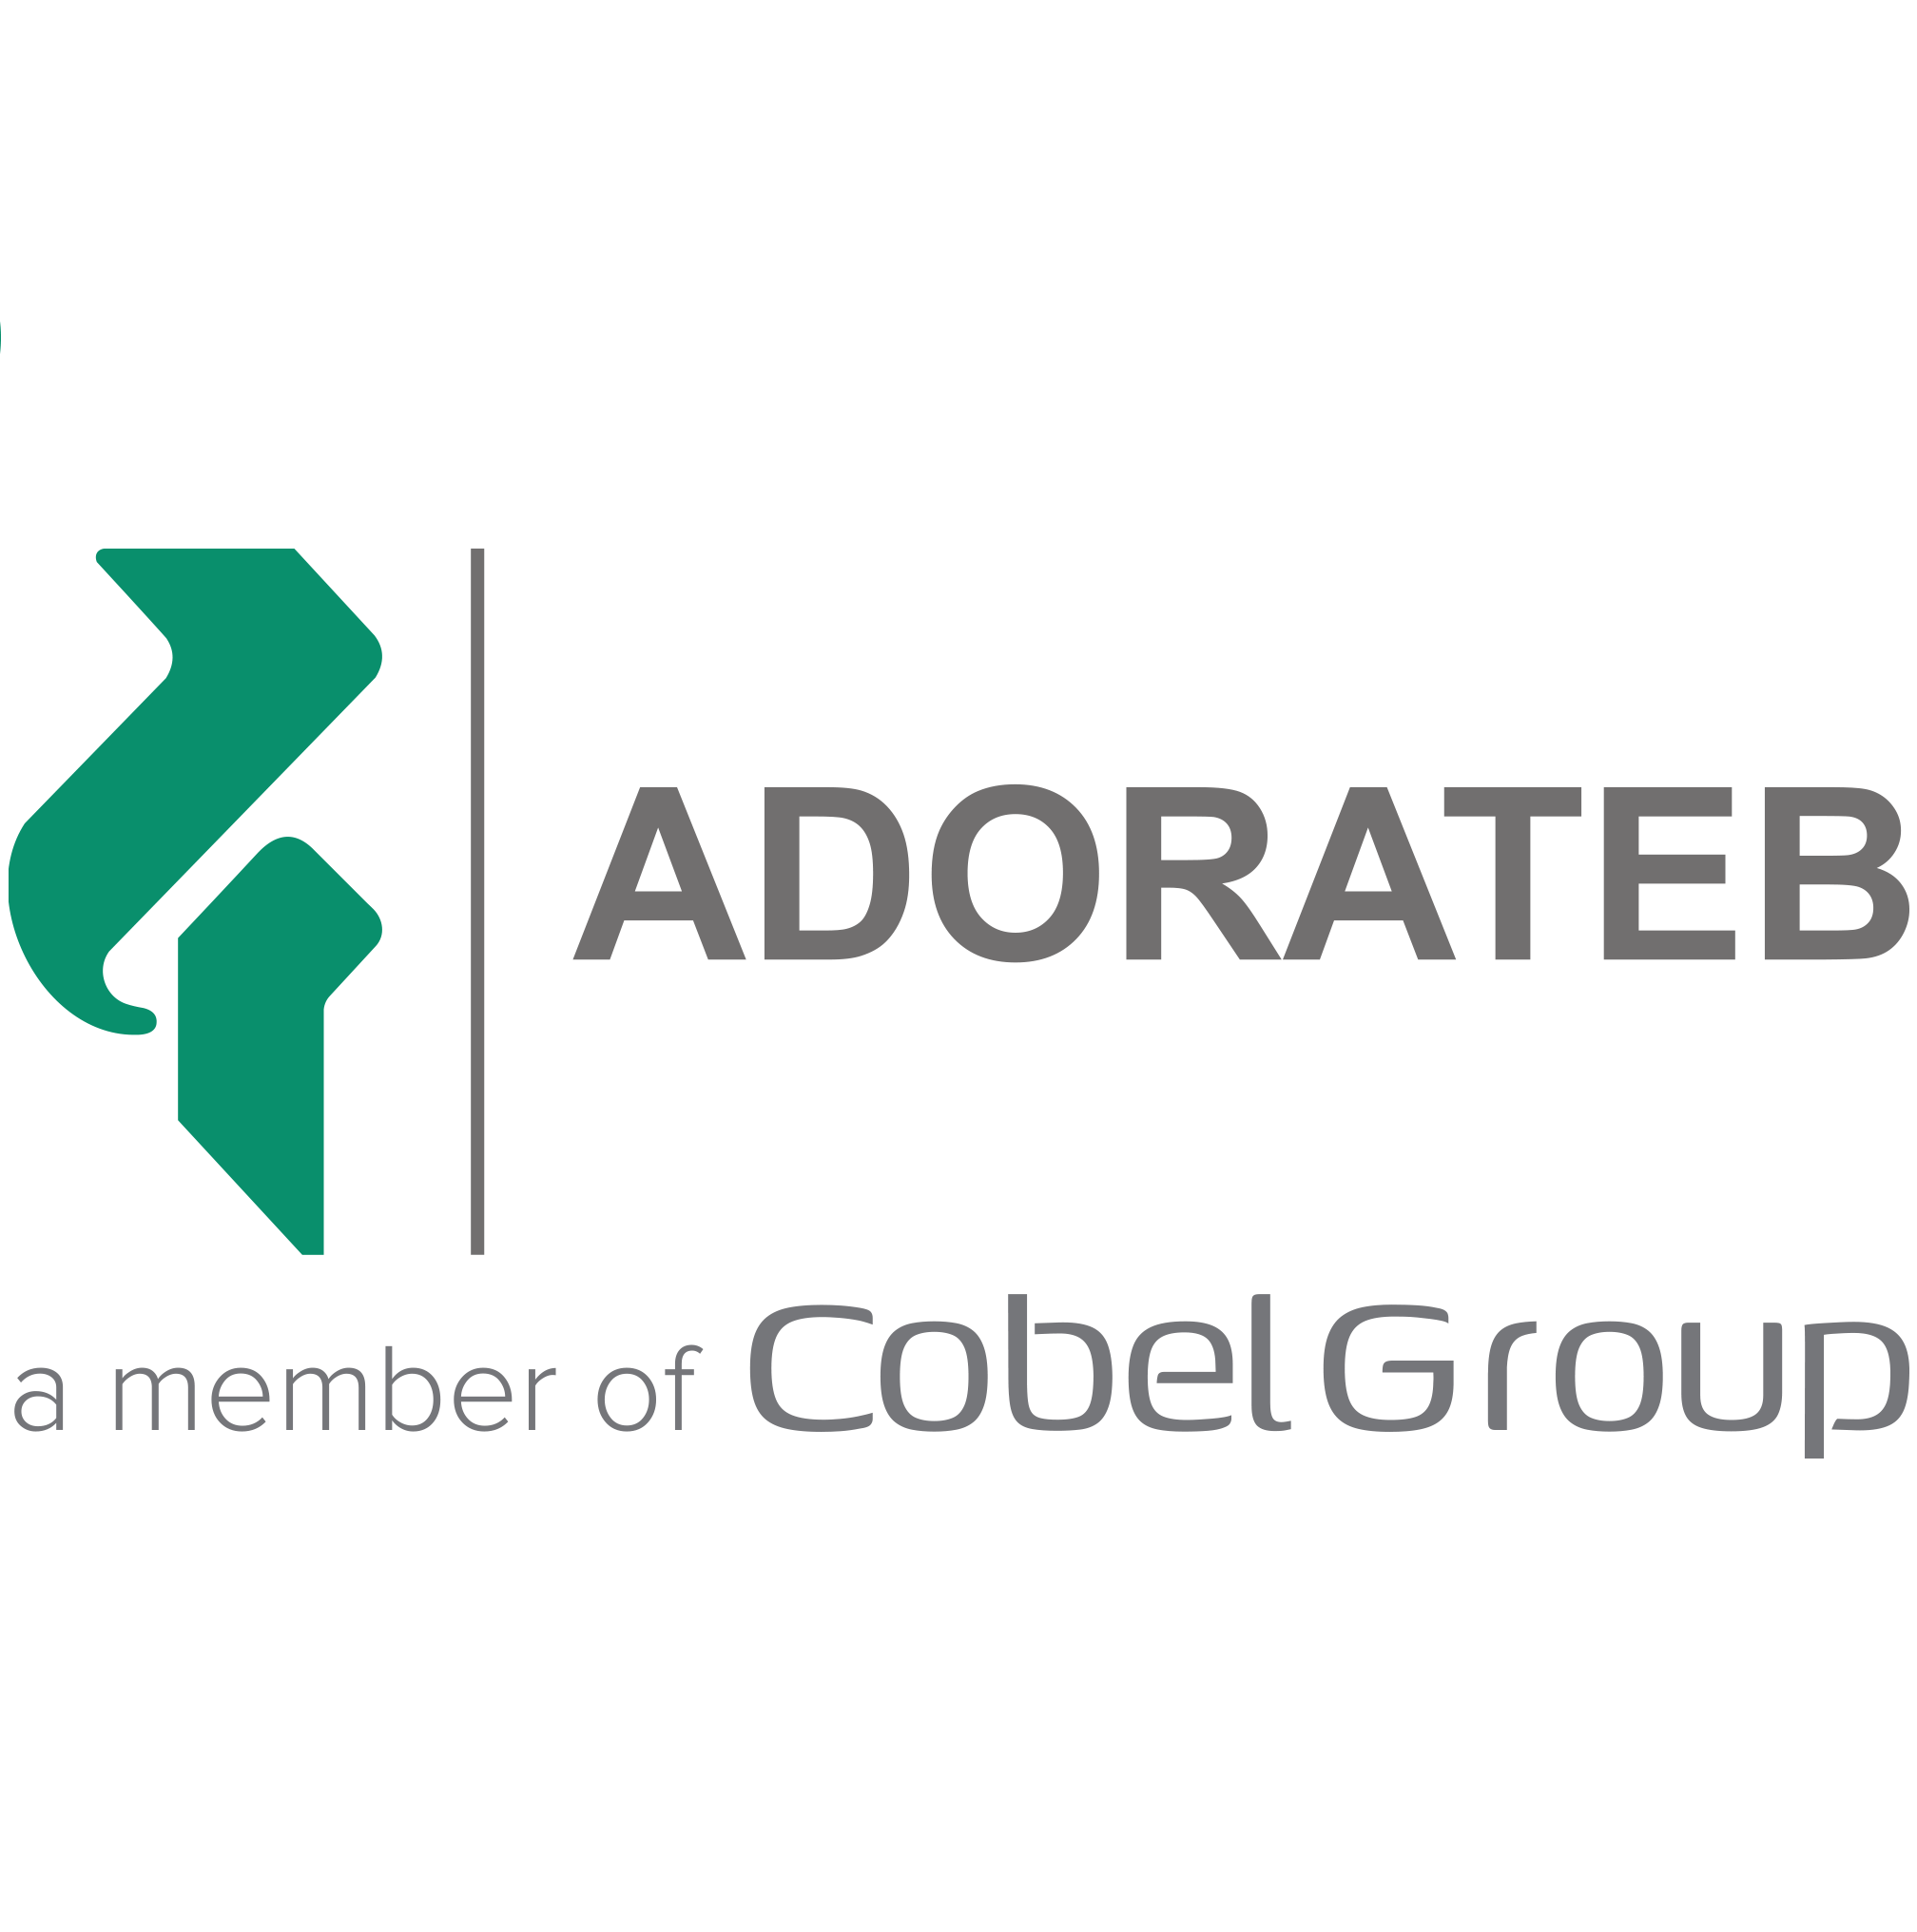 مدیر بازاریابی تجاری | Trade Marketing Manager - آدوراطب | Adorateb